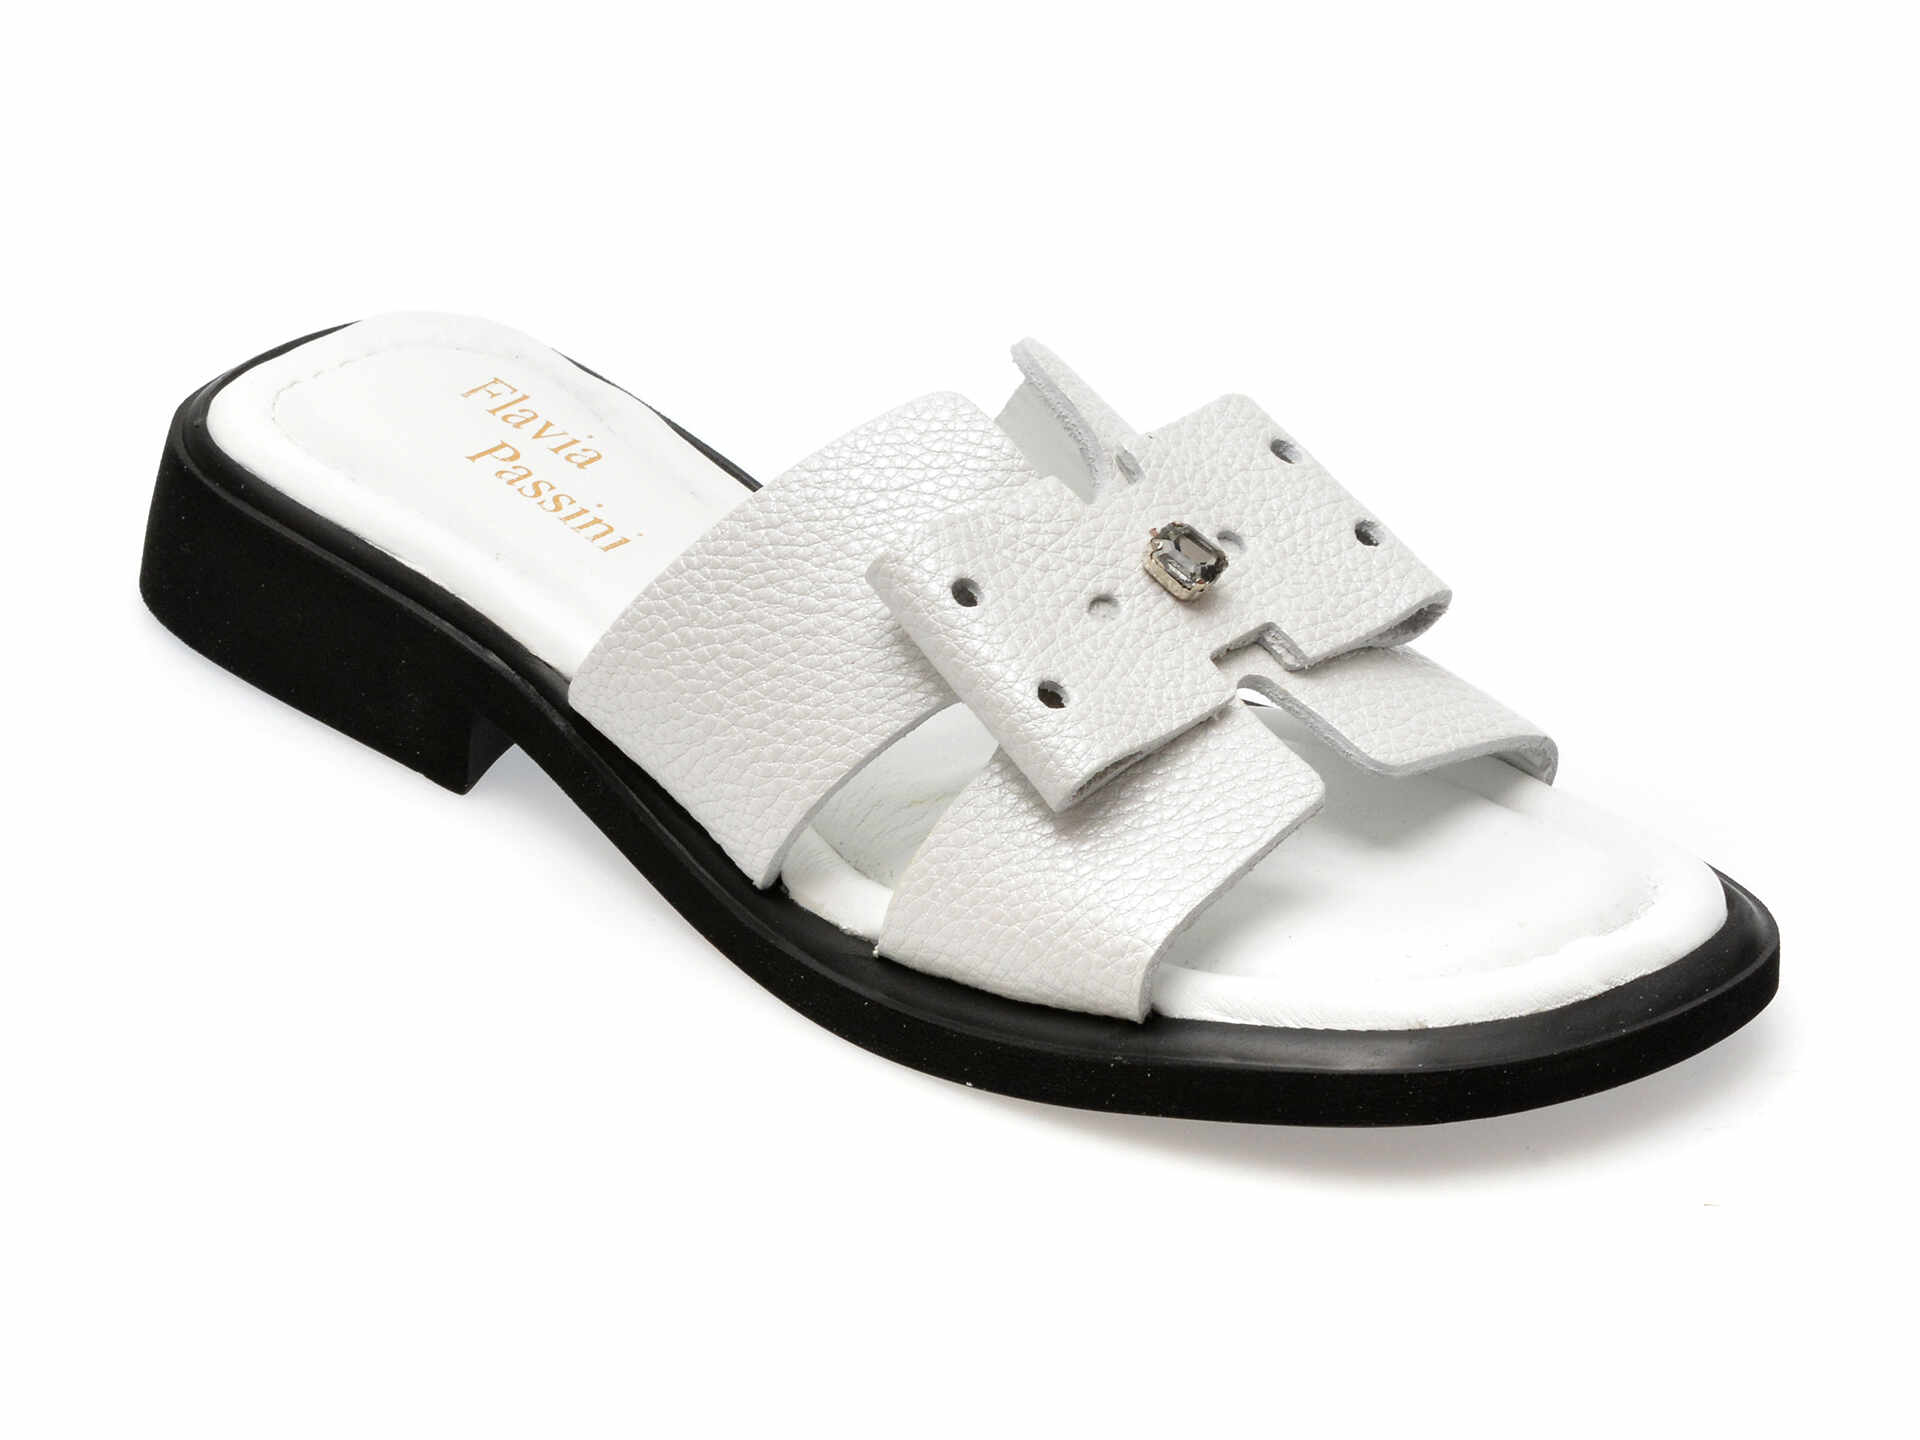 Papuci casual FLAVIA PASSINI albi, 3042068, din piele naturala